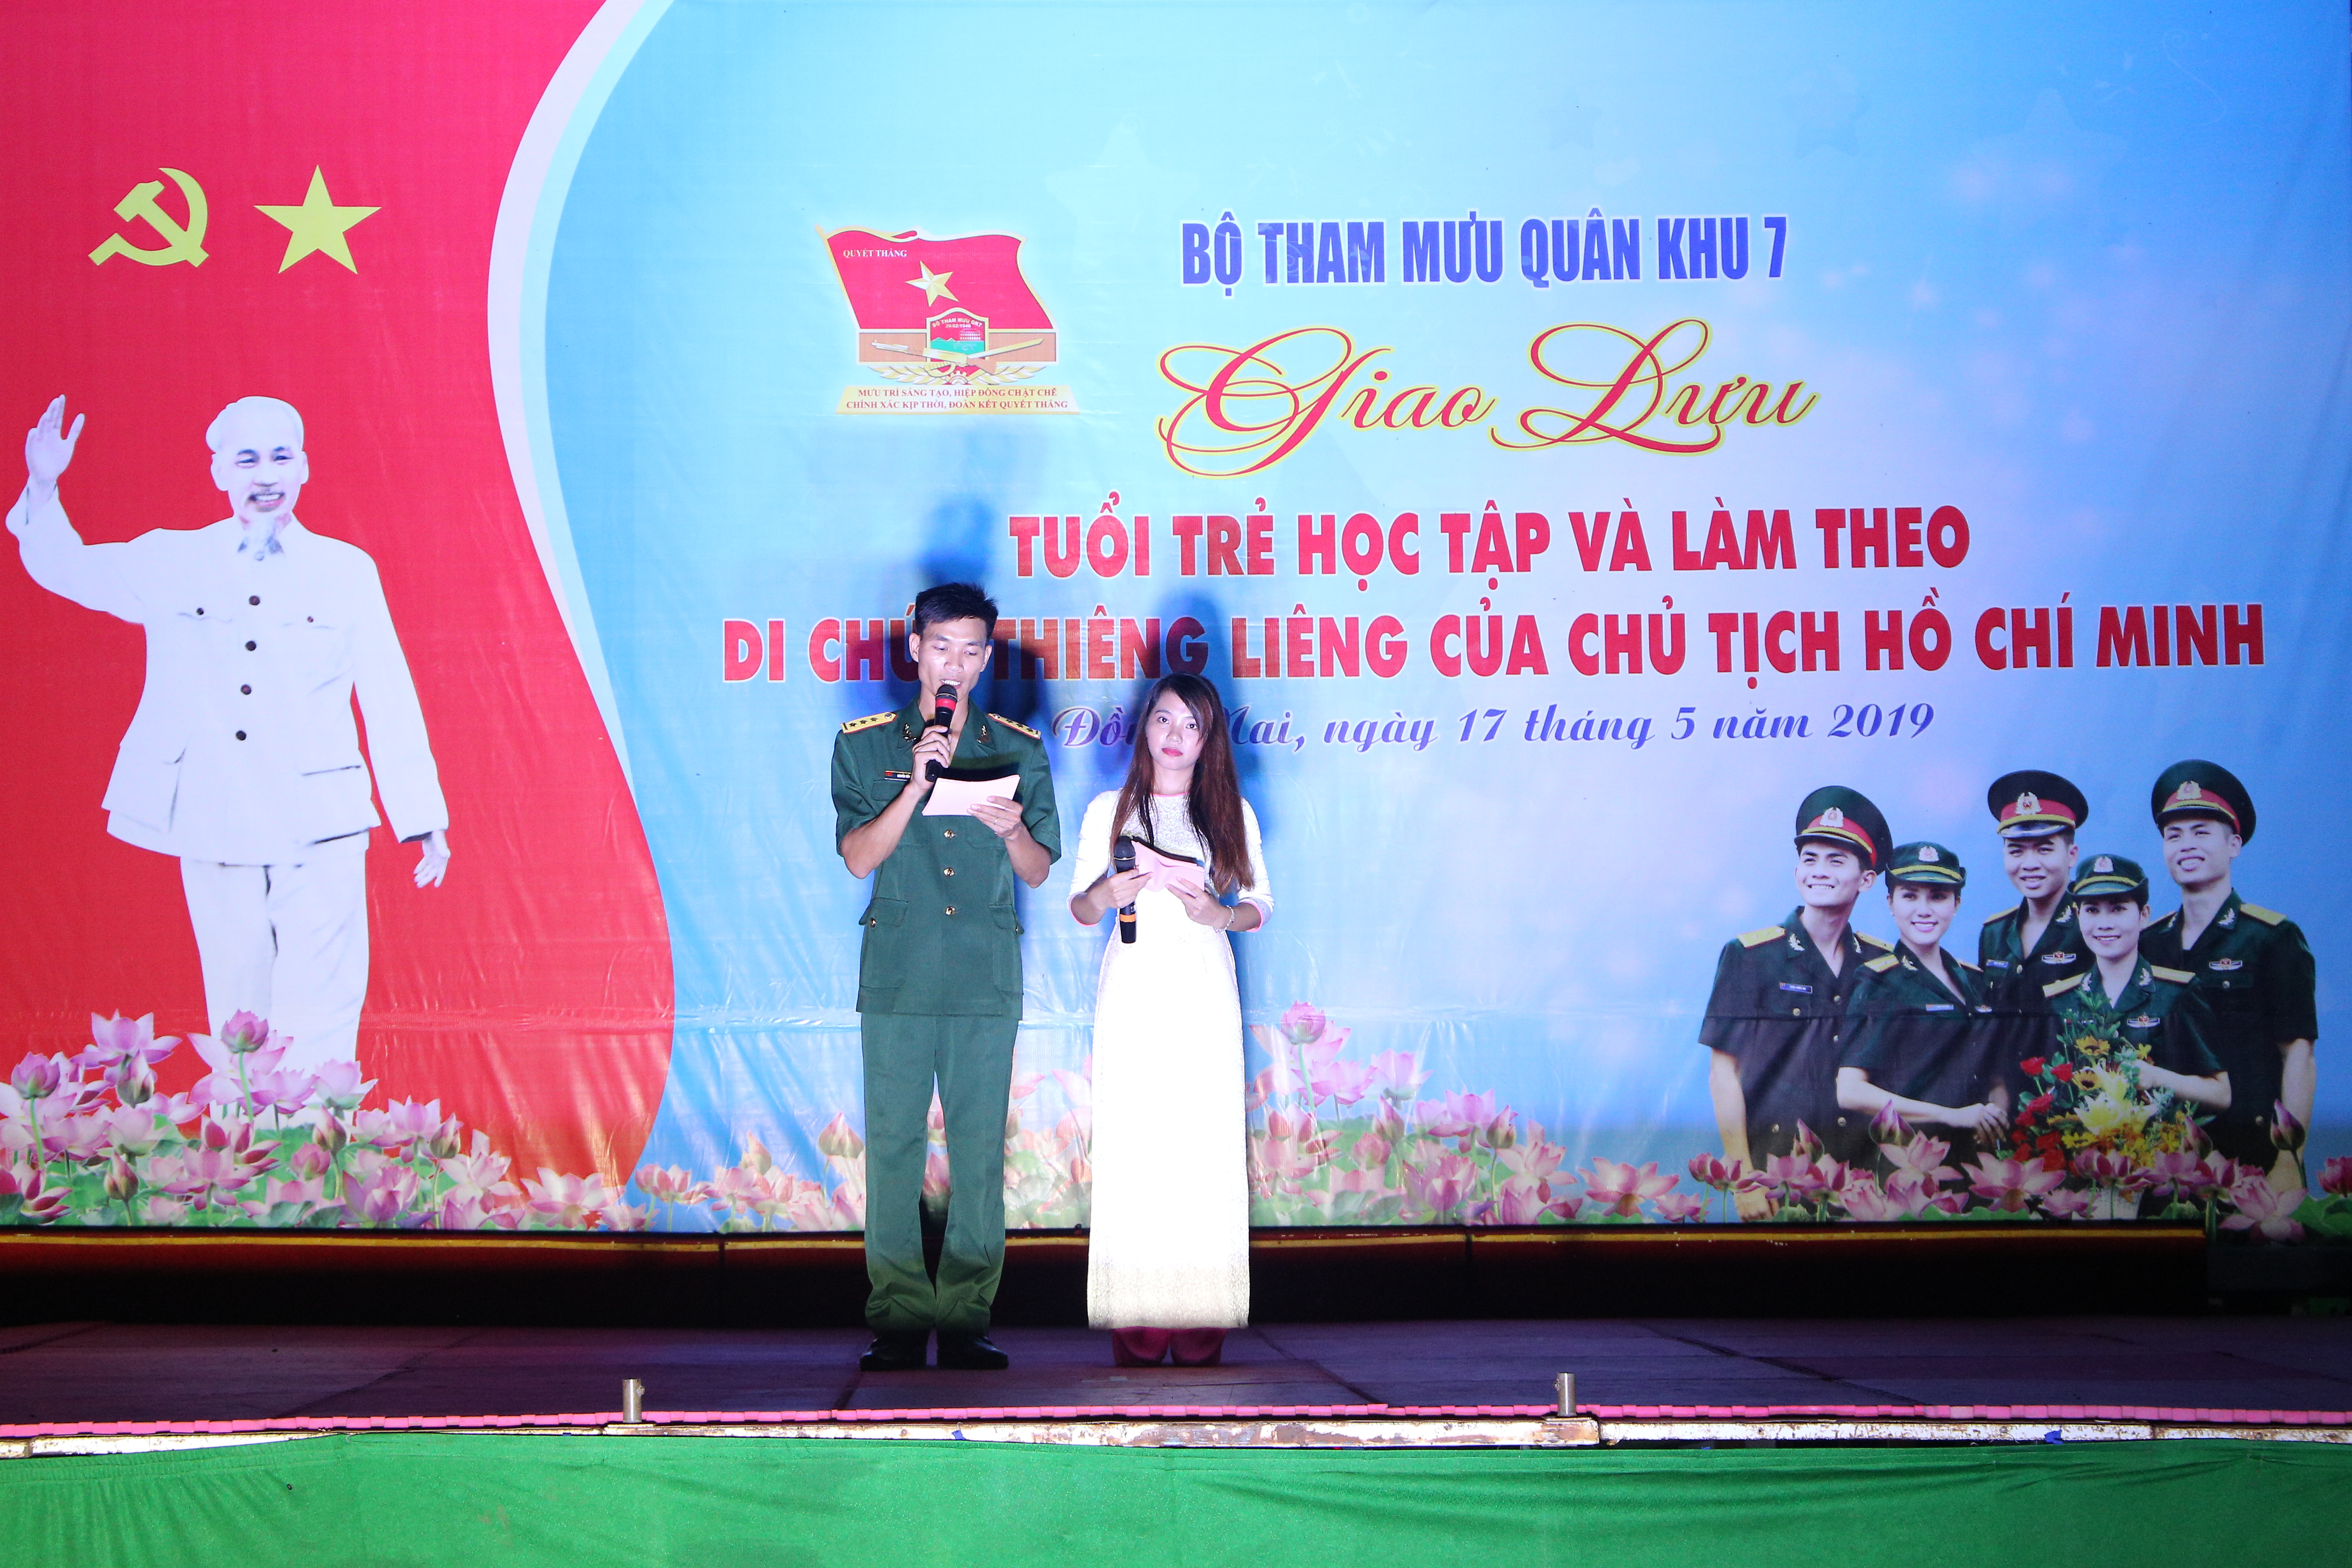 Quân Khu 7 Online là nơi cập nhật tin tức và trao đổi thông tin liên quan đến quân đội Việt Nam, cũng như tổ chức các hoạt động văn nghệ, giao lưu giữa cán bộ, chiến sĩ và dân công. Đây là điểm đến thu hút đông đảo cộng đồng mạng quan tâm và tham gia vào các sự kiện ý nghĩa.